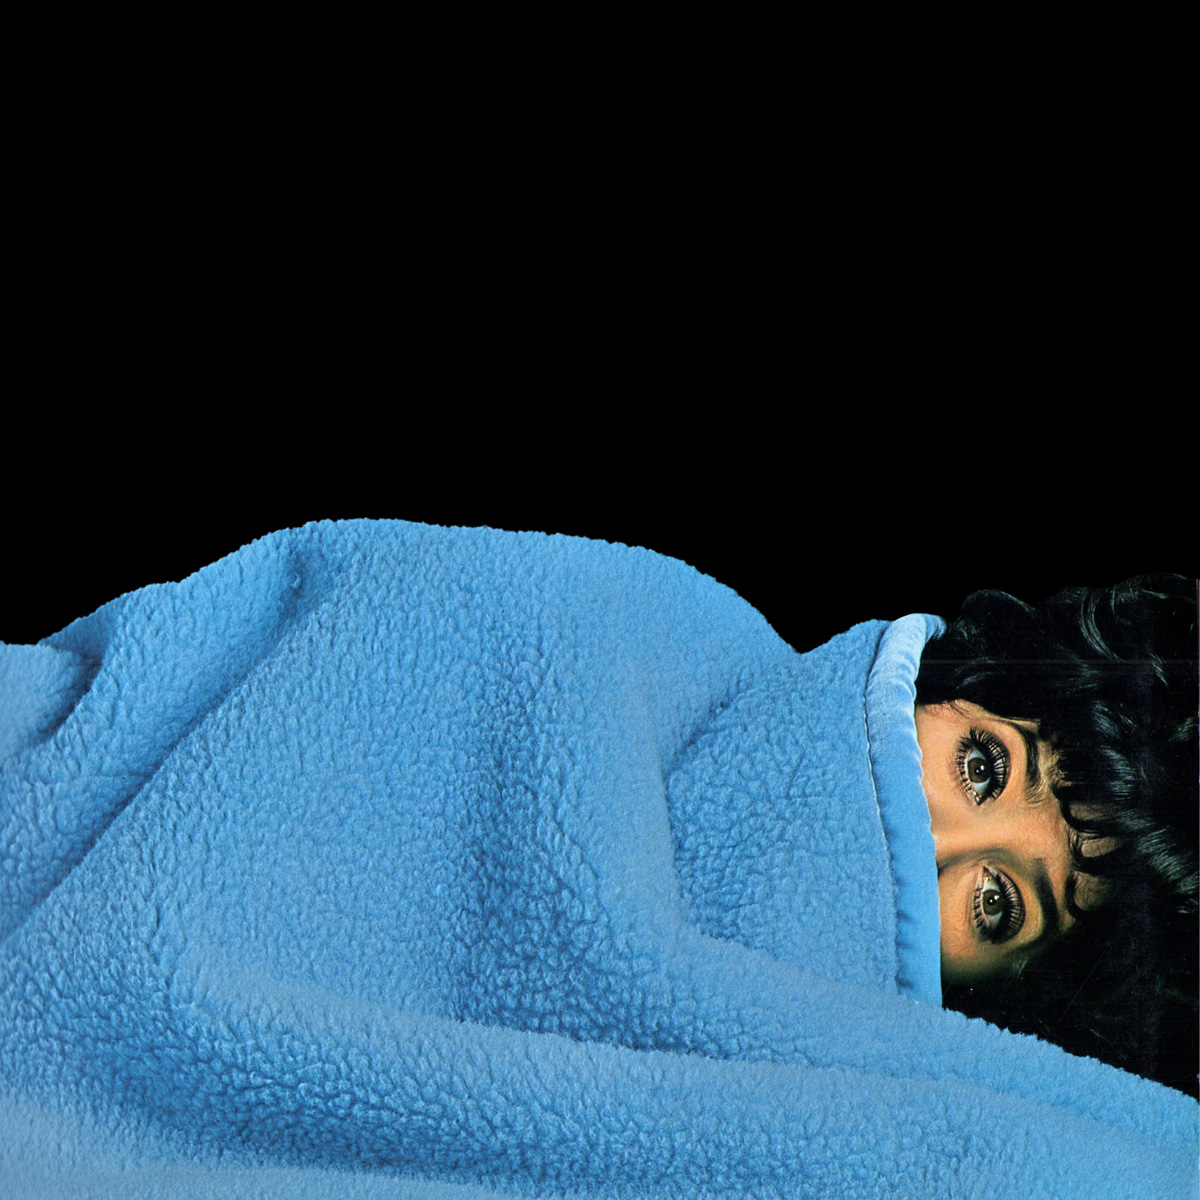 Das Katalog-Cover zeigt eine Frau, die bis zu den Augen unter einer blauen Wohndecke liegt.